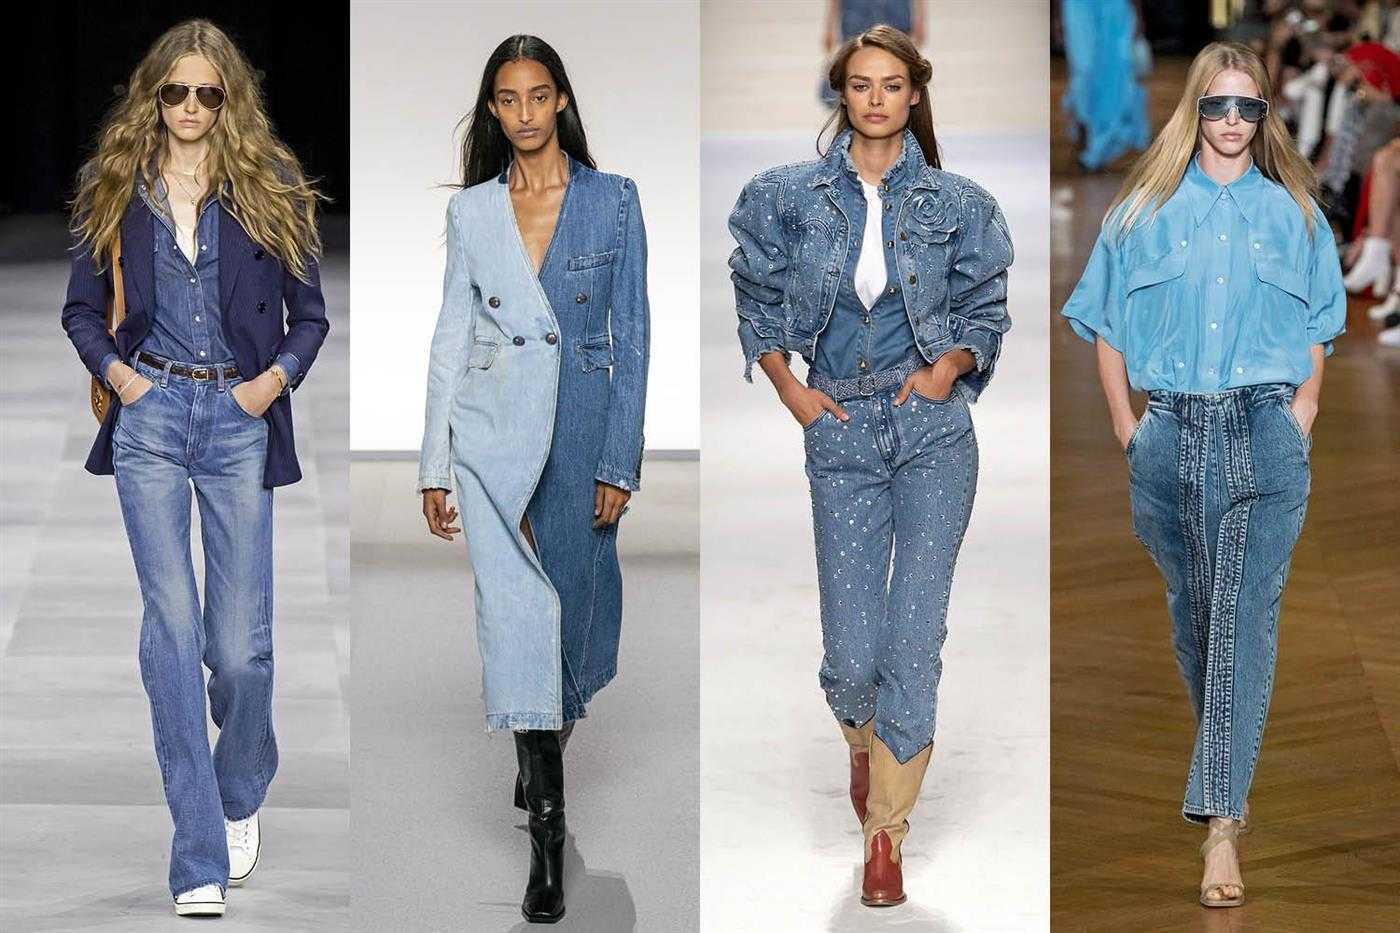 Джинсовый стиль в мужской и женской одежде, виды джинсов, фото